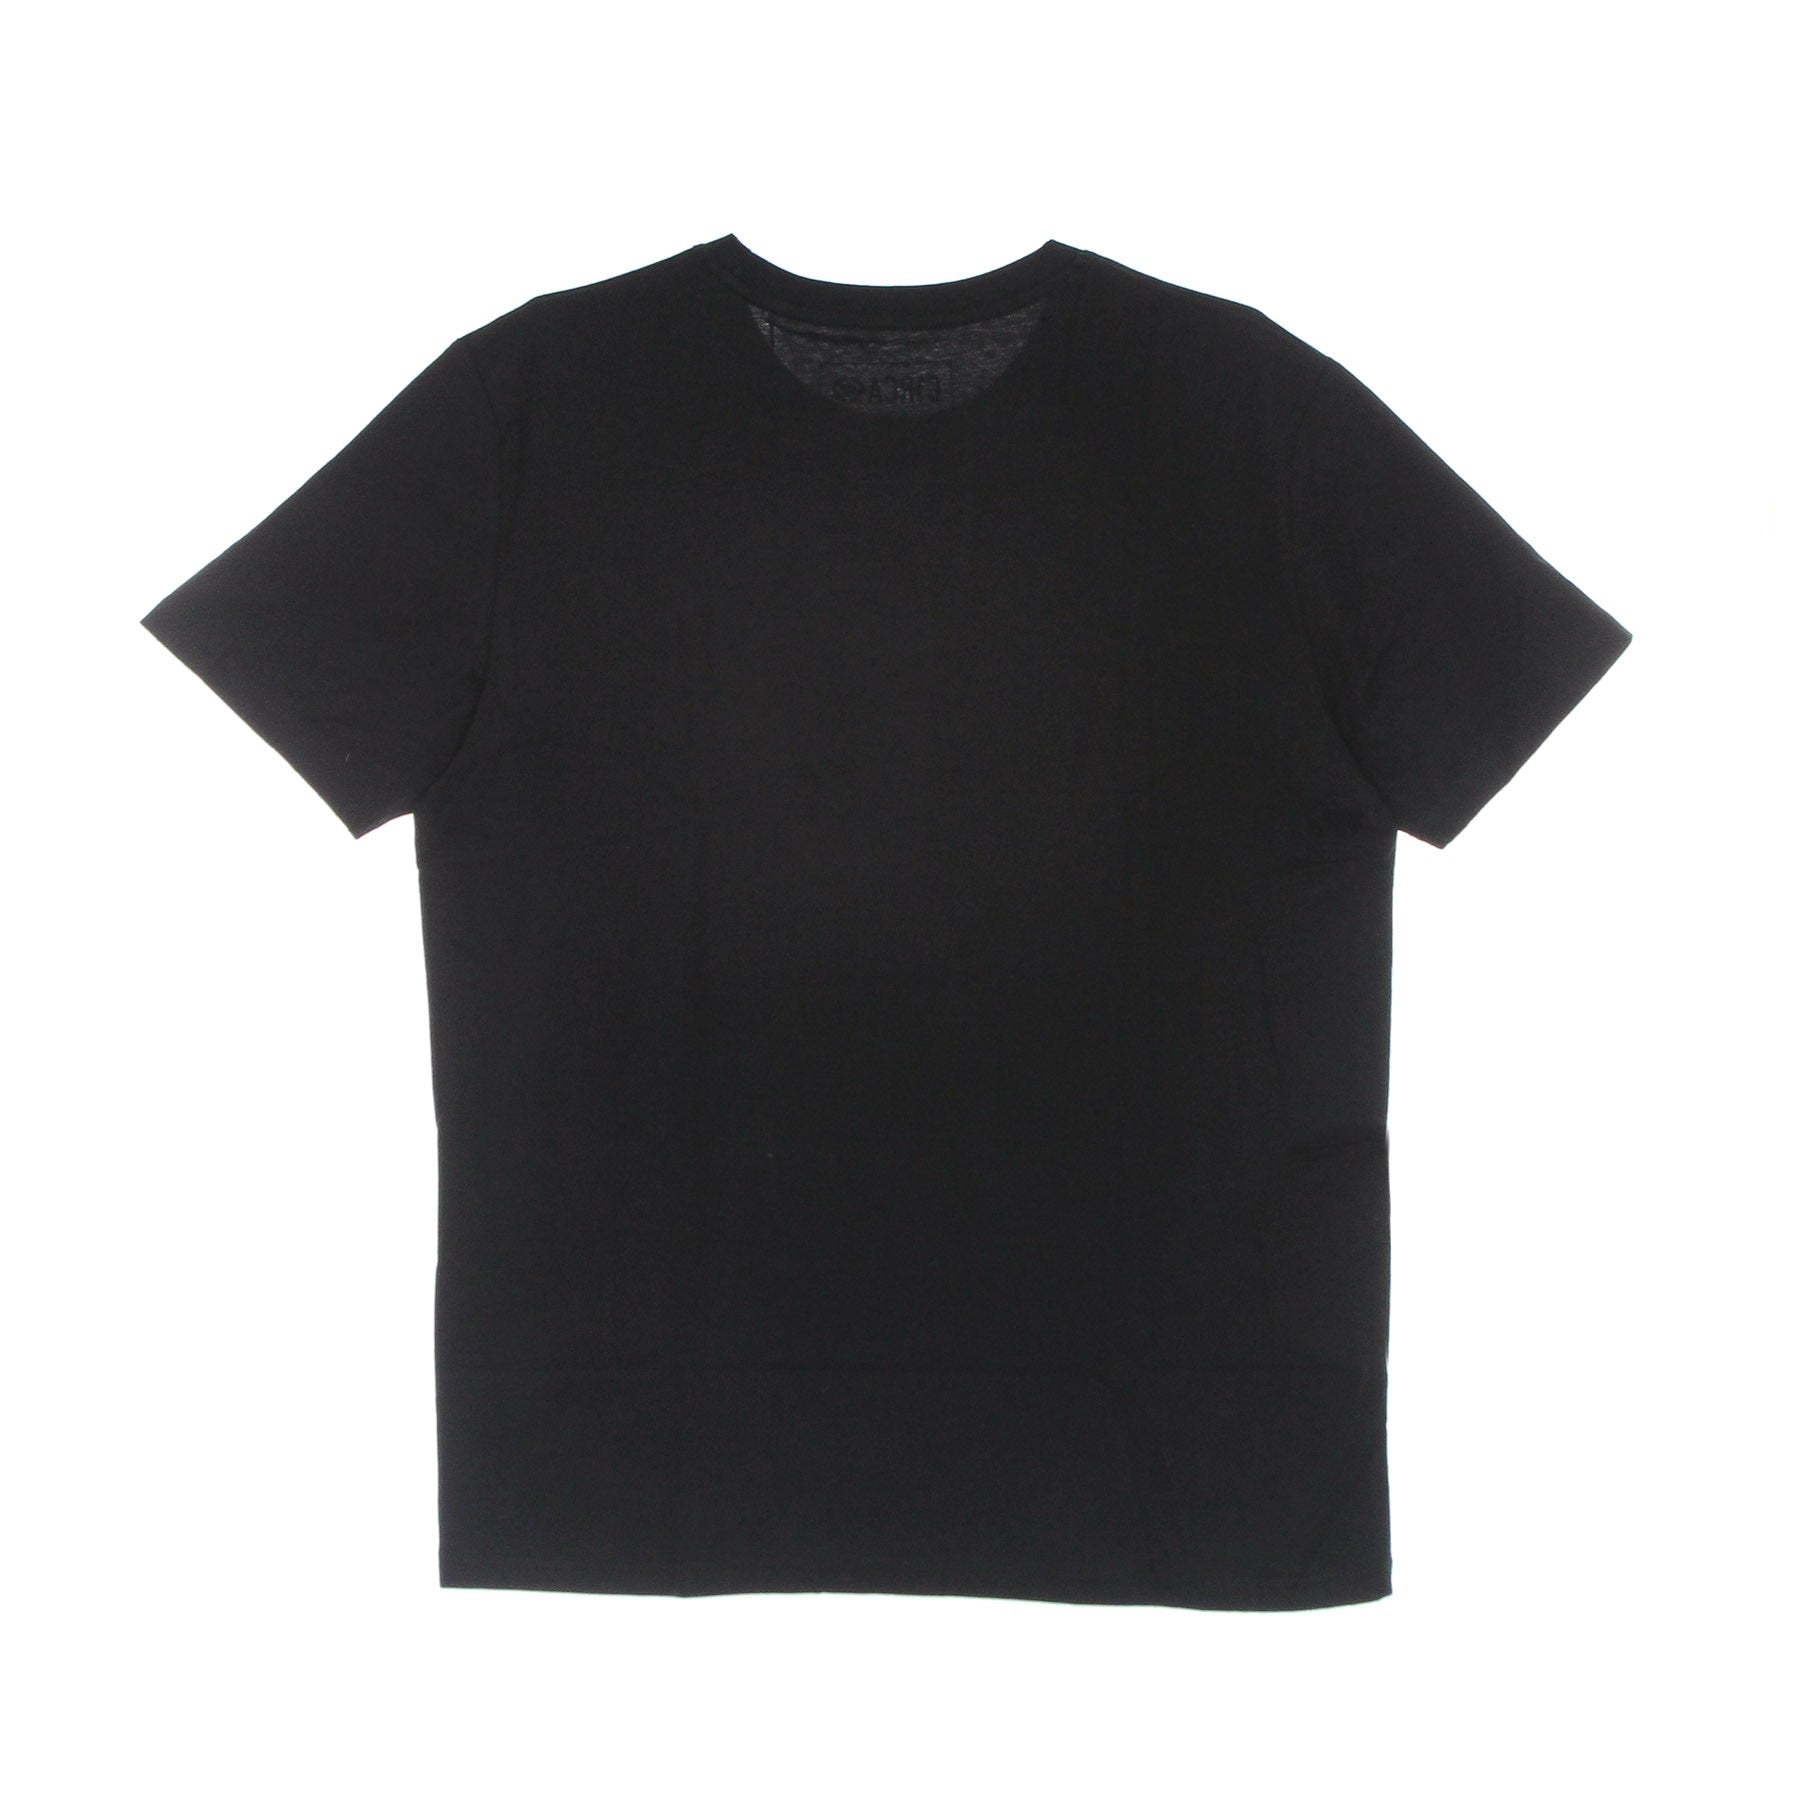 Herren-Flow-T-Shirt mit hellerem schwarzem T-Shirt